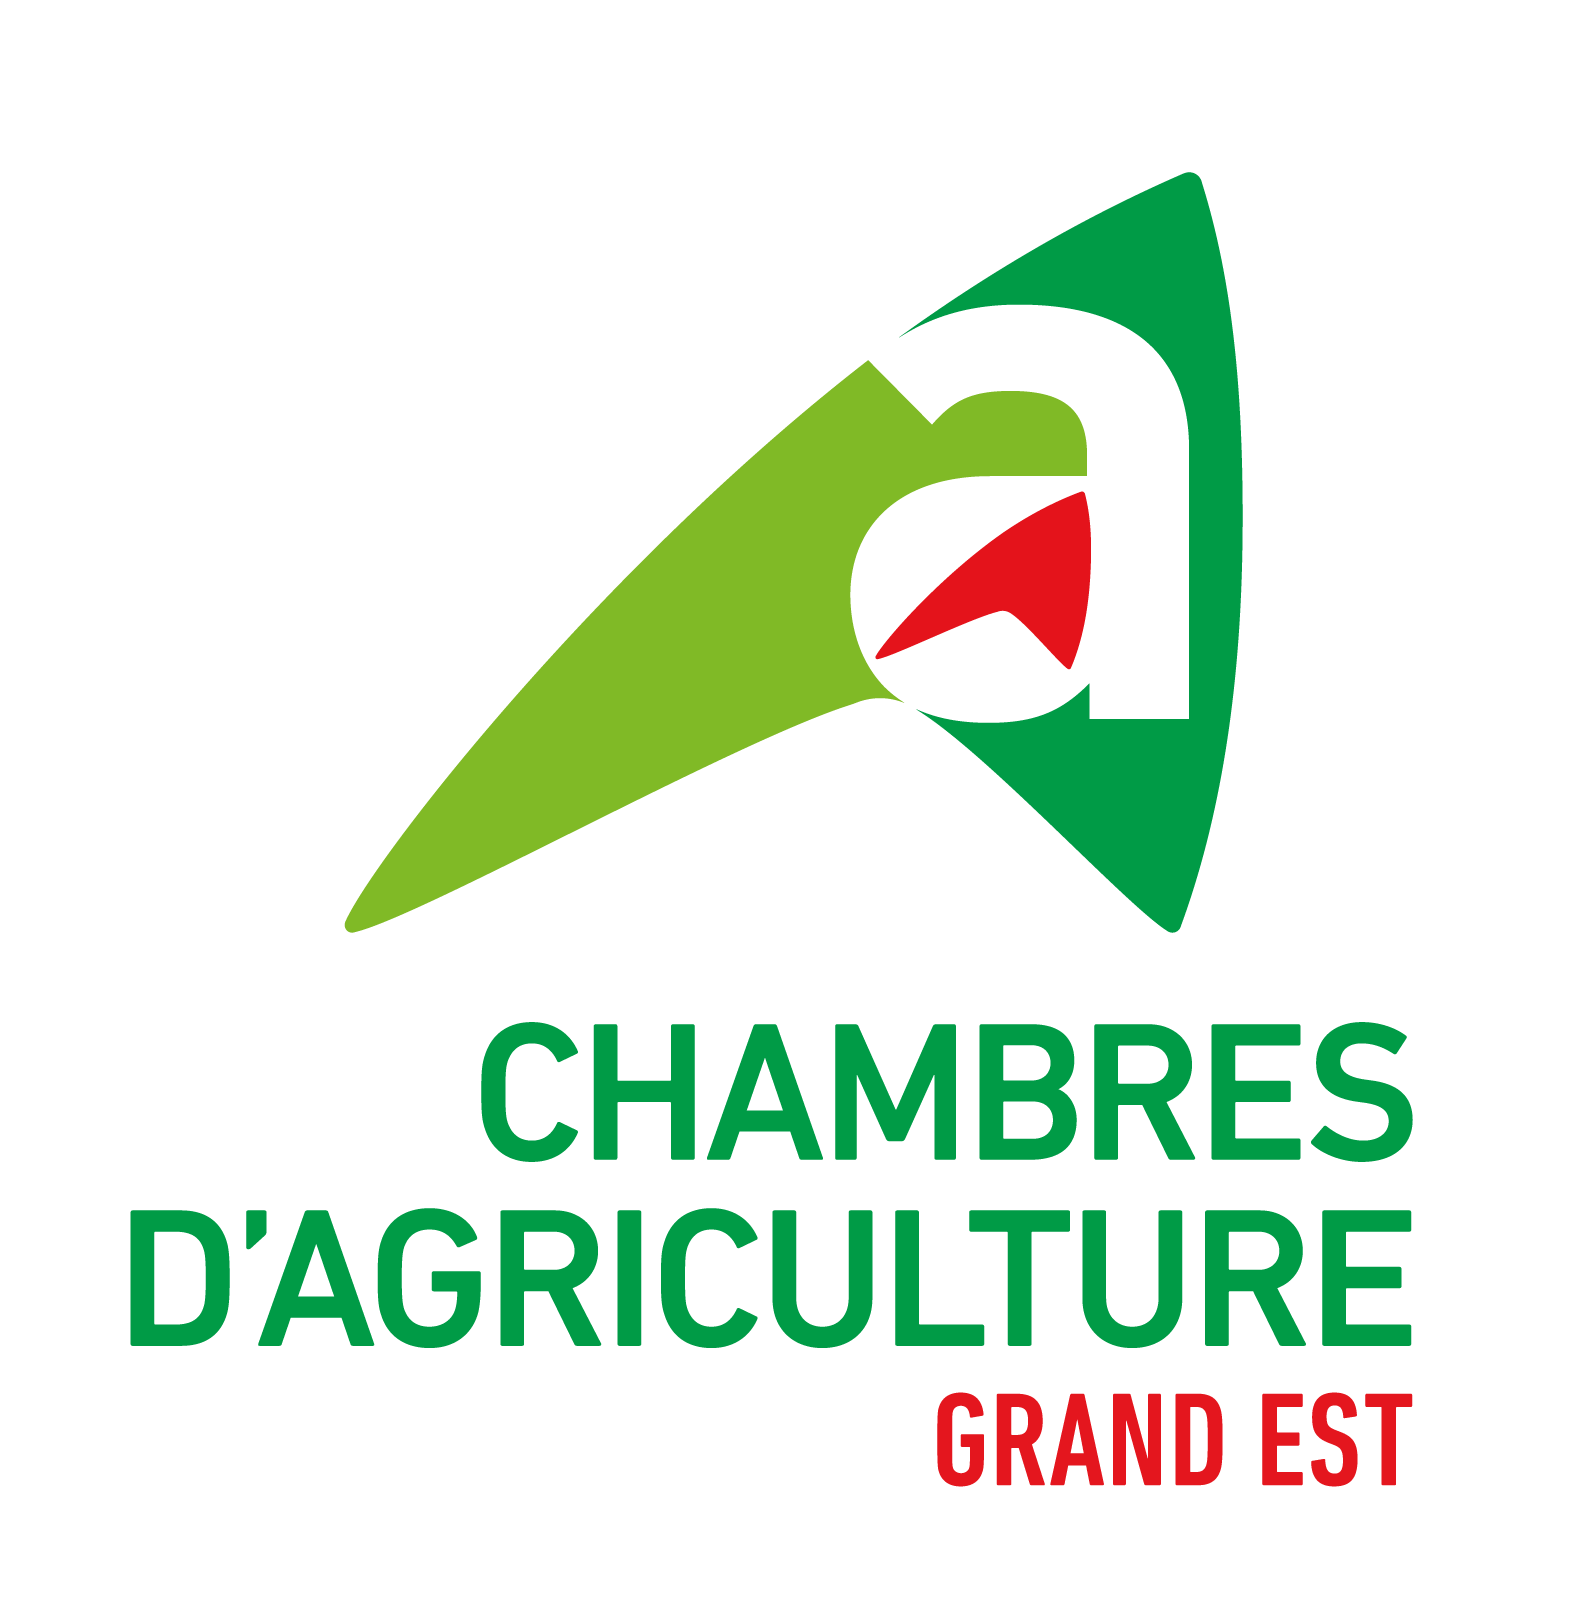 Image logo chambre d’agriculture grand est